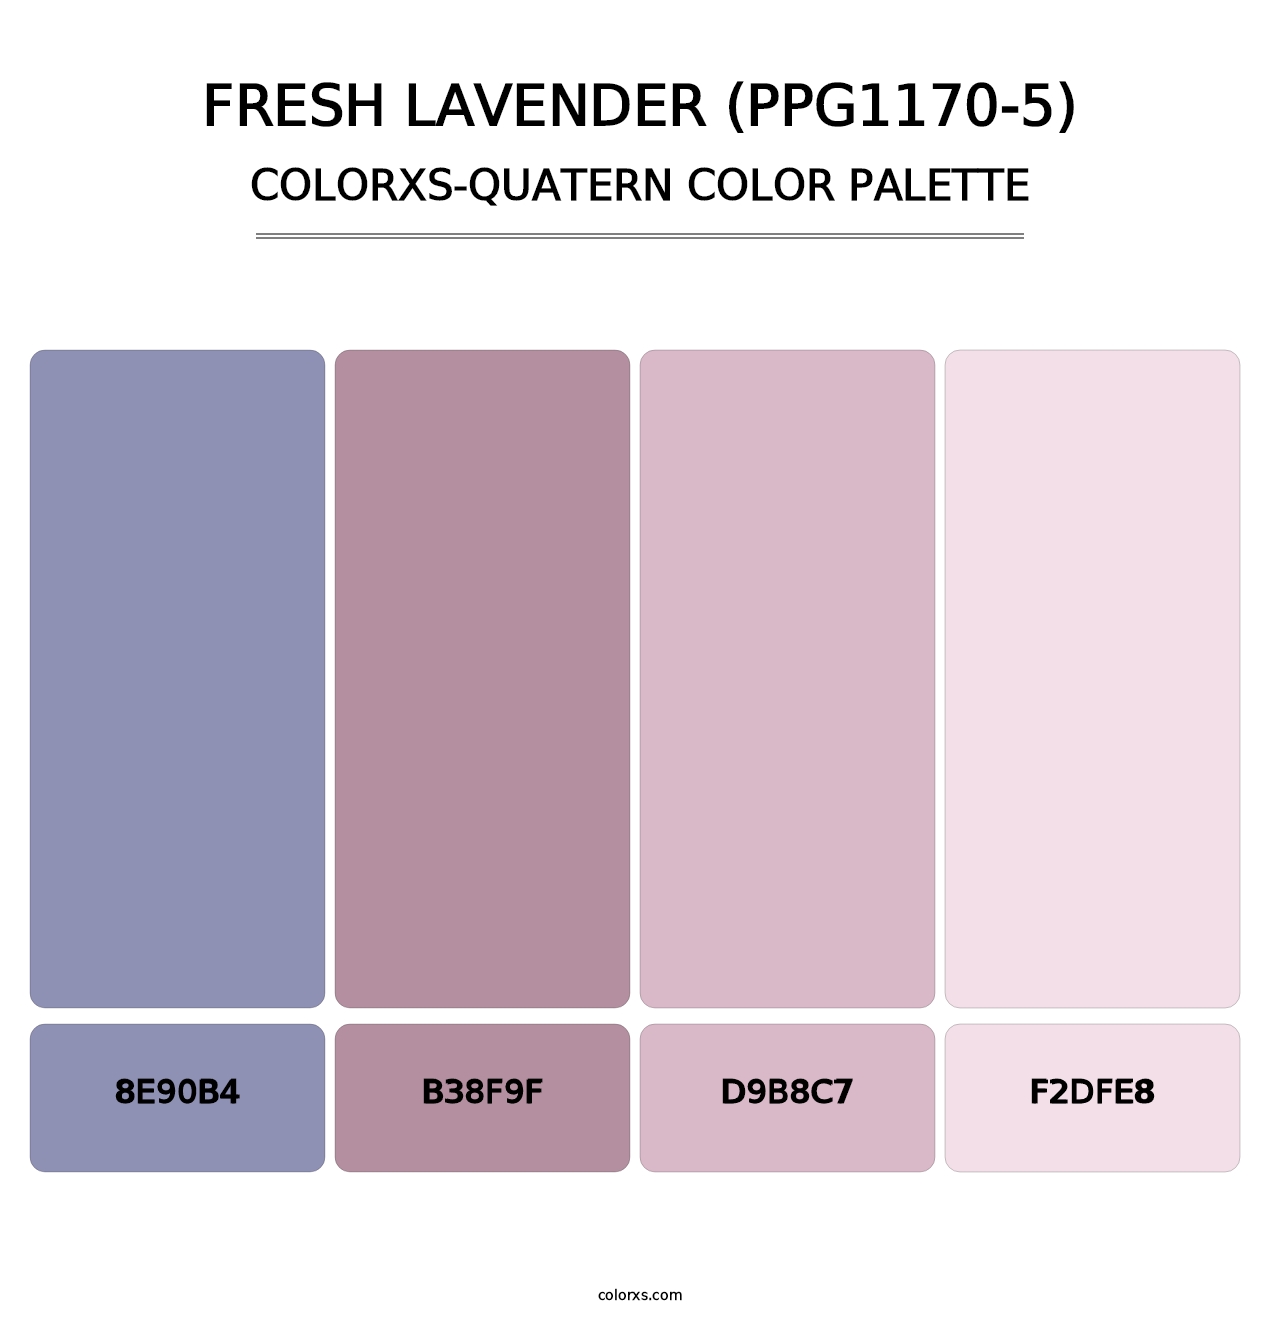 Fresh Lavender (PPG1170-5) - Colorxs Quatern Palette